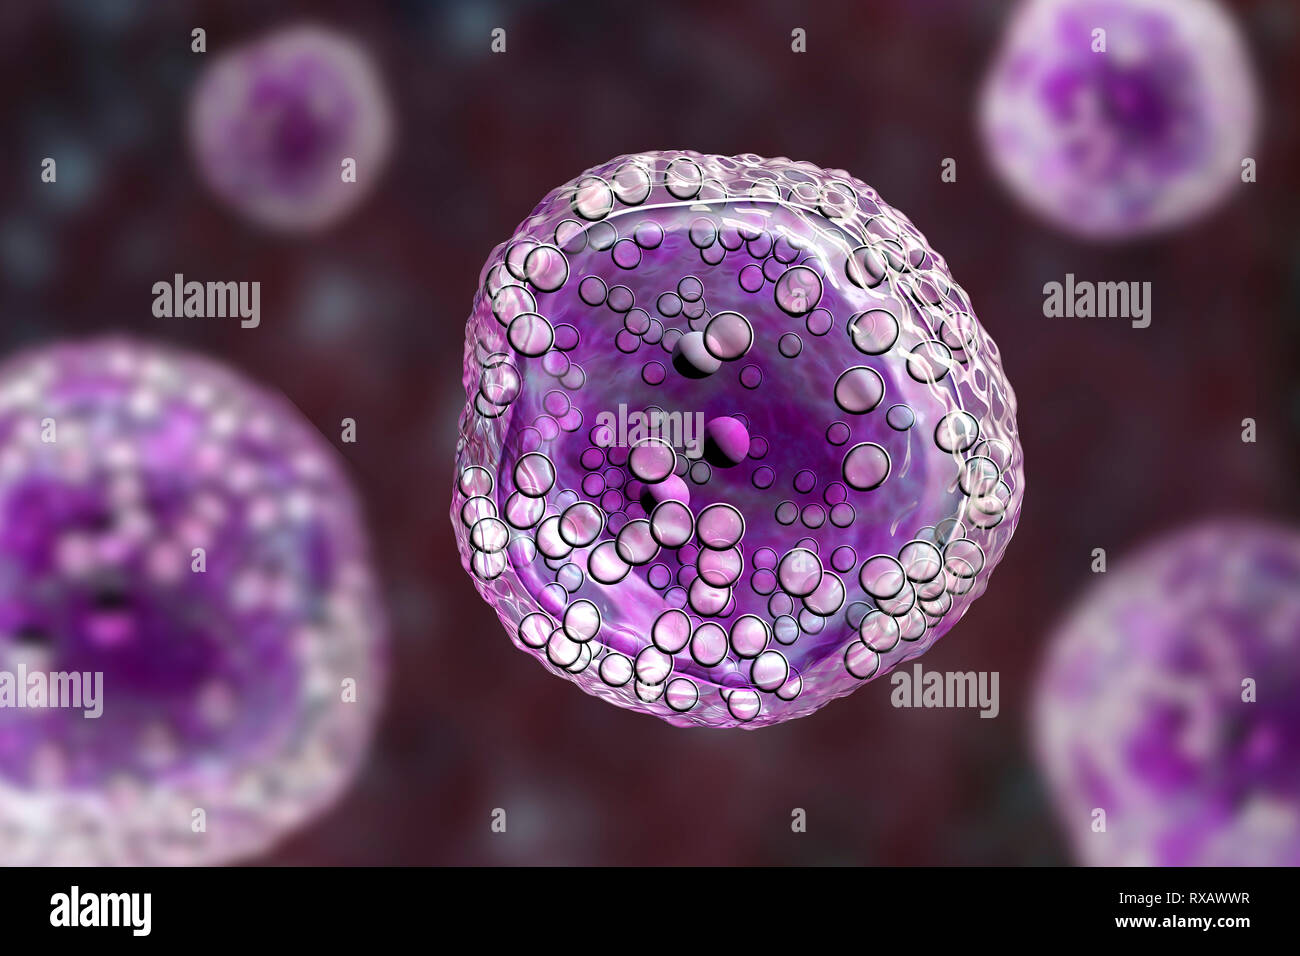 Burkitt's lymphoma cells, illustration Stock Photo